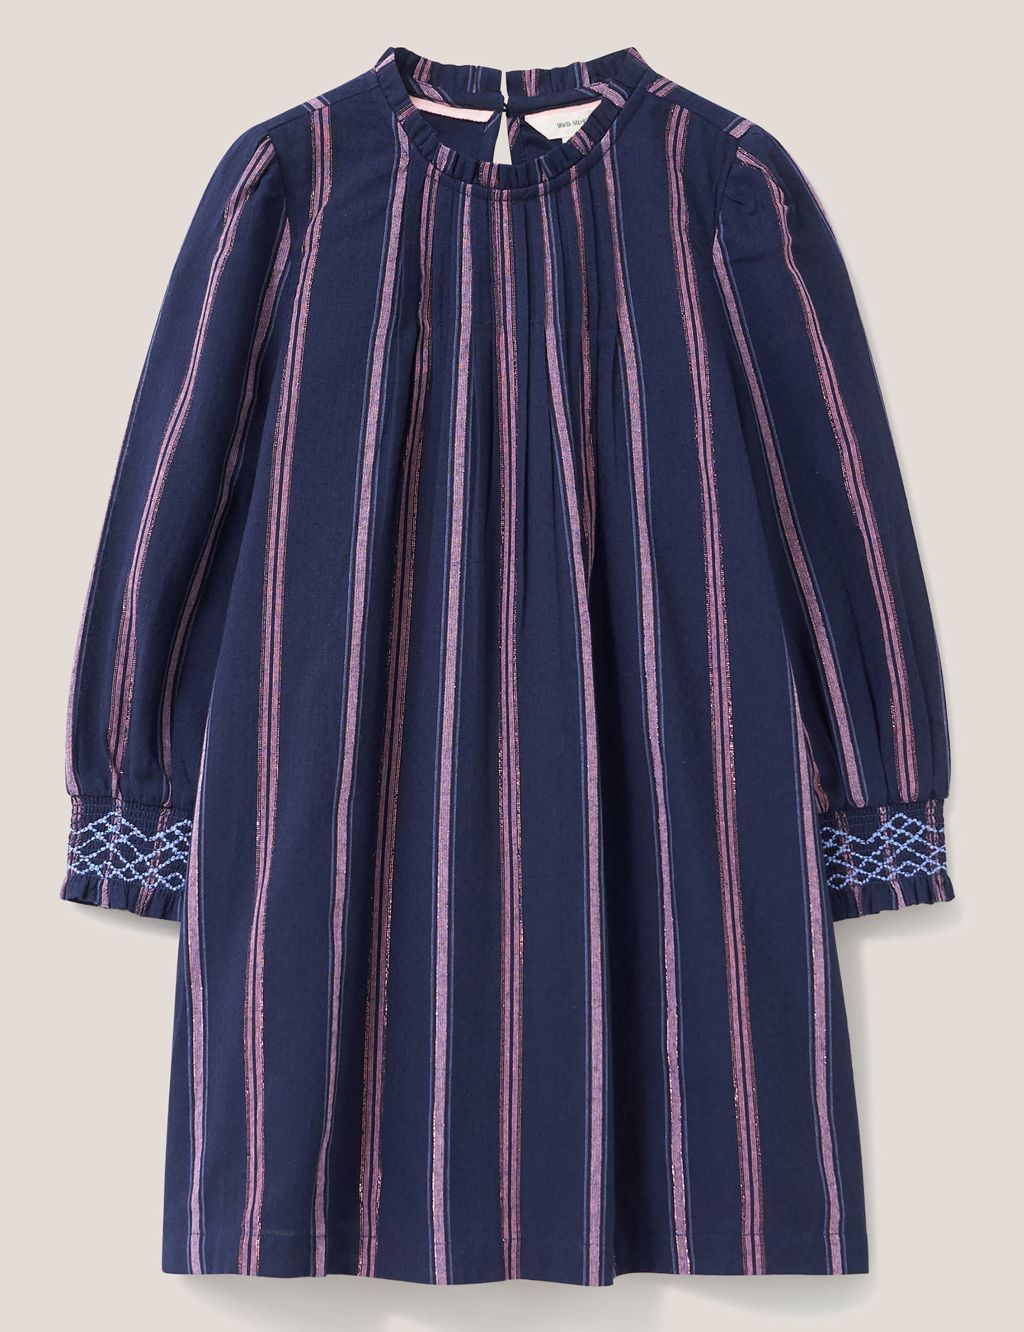 Cotton Rich Striped Dress (3-10 Yrs)